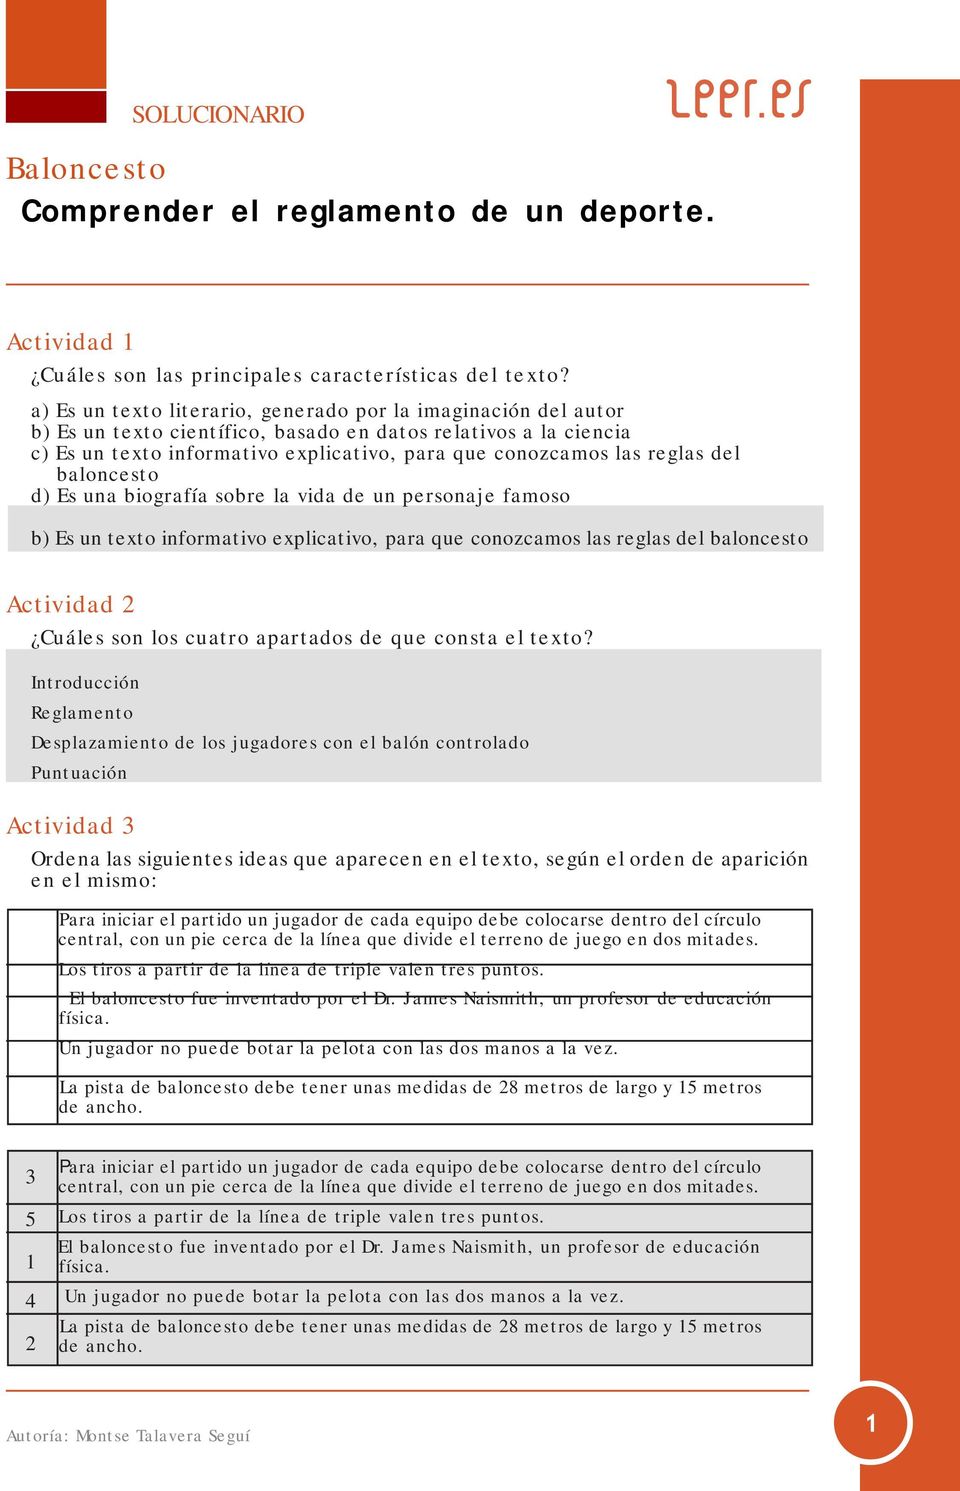 Baloncesto Comprender el reglamento de un deporte. - PDF Free Download